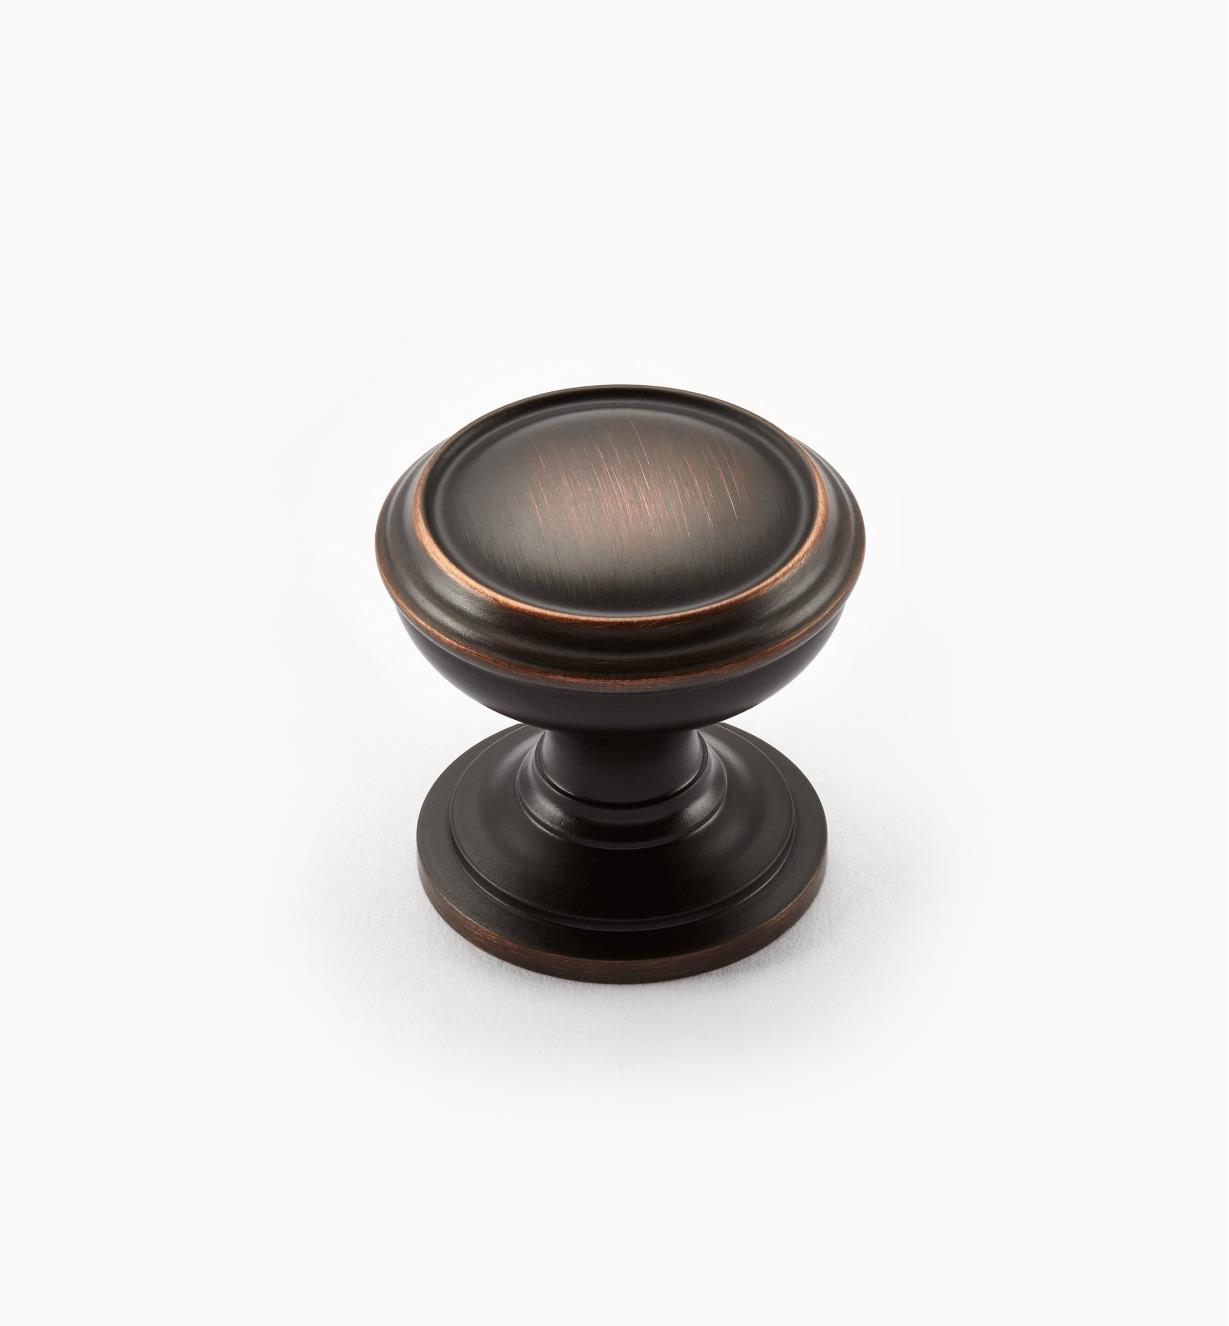 02A2242 - Revitalize Oil-Rubbed Bronze 1 1/4" Plain Round Knob, each